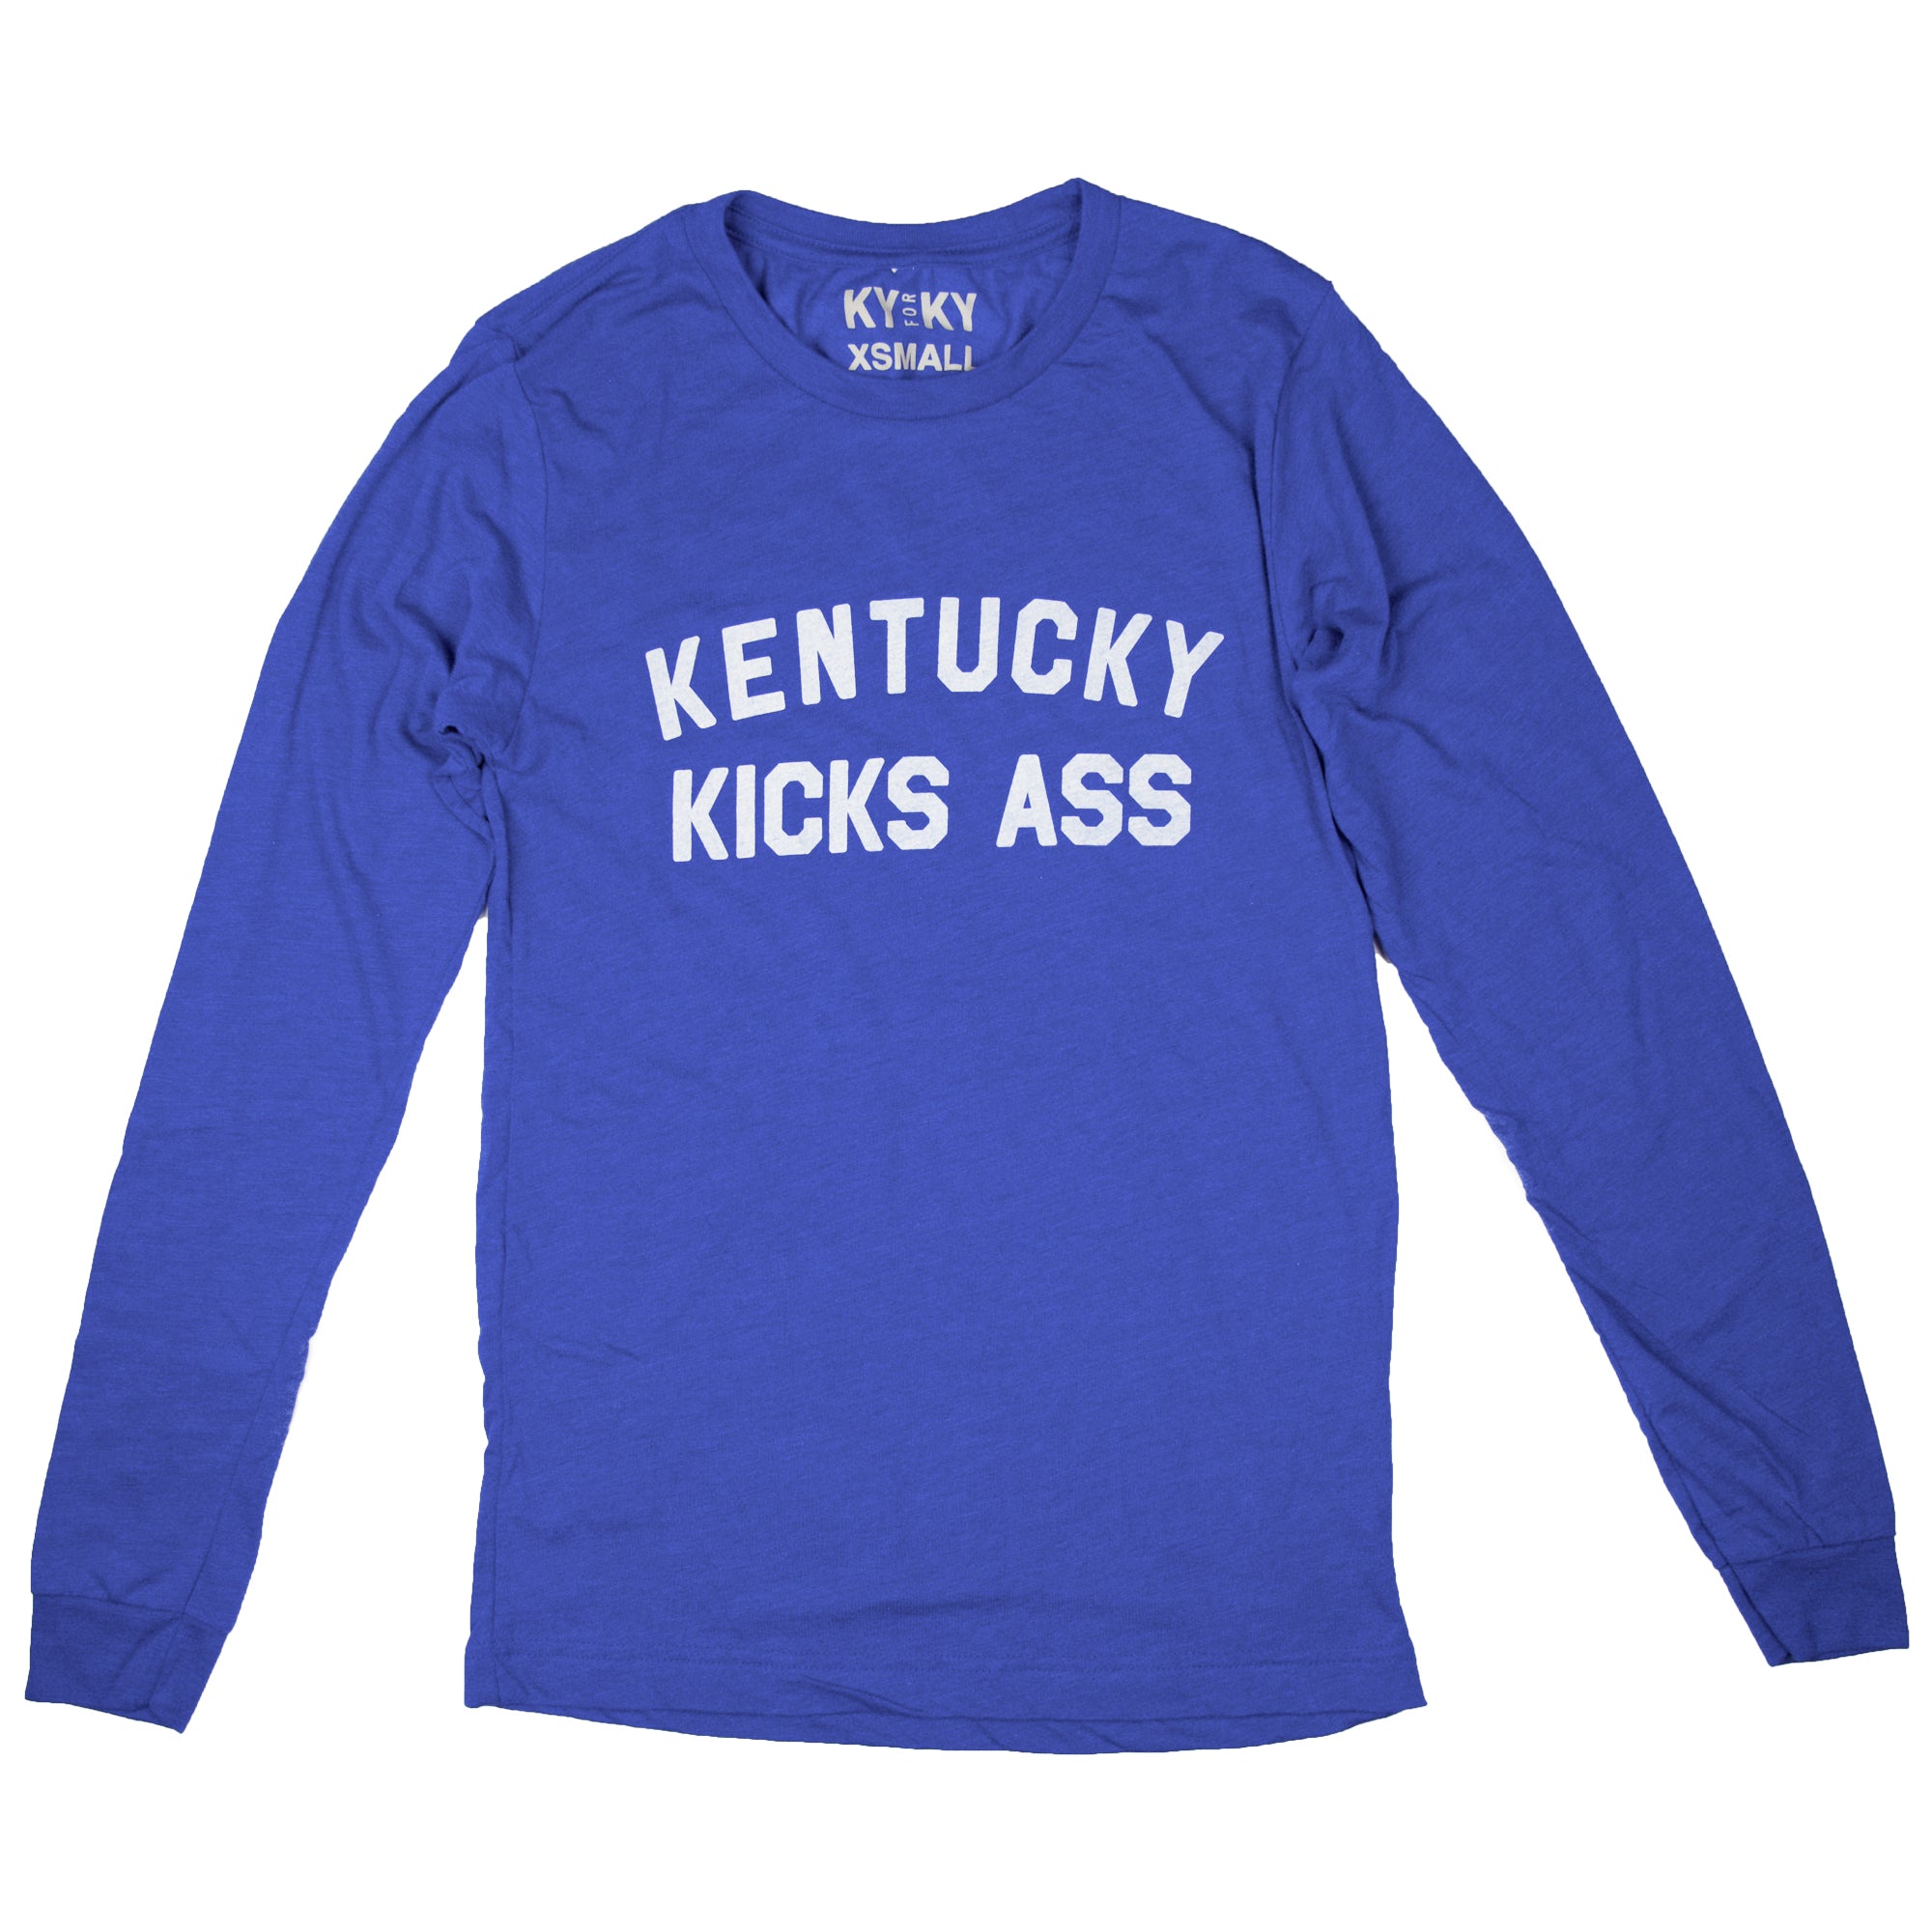 Long Sleeve Kentucky Kicks Ass Shirt-Long Sleeve Shirt-KY for KY Store